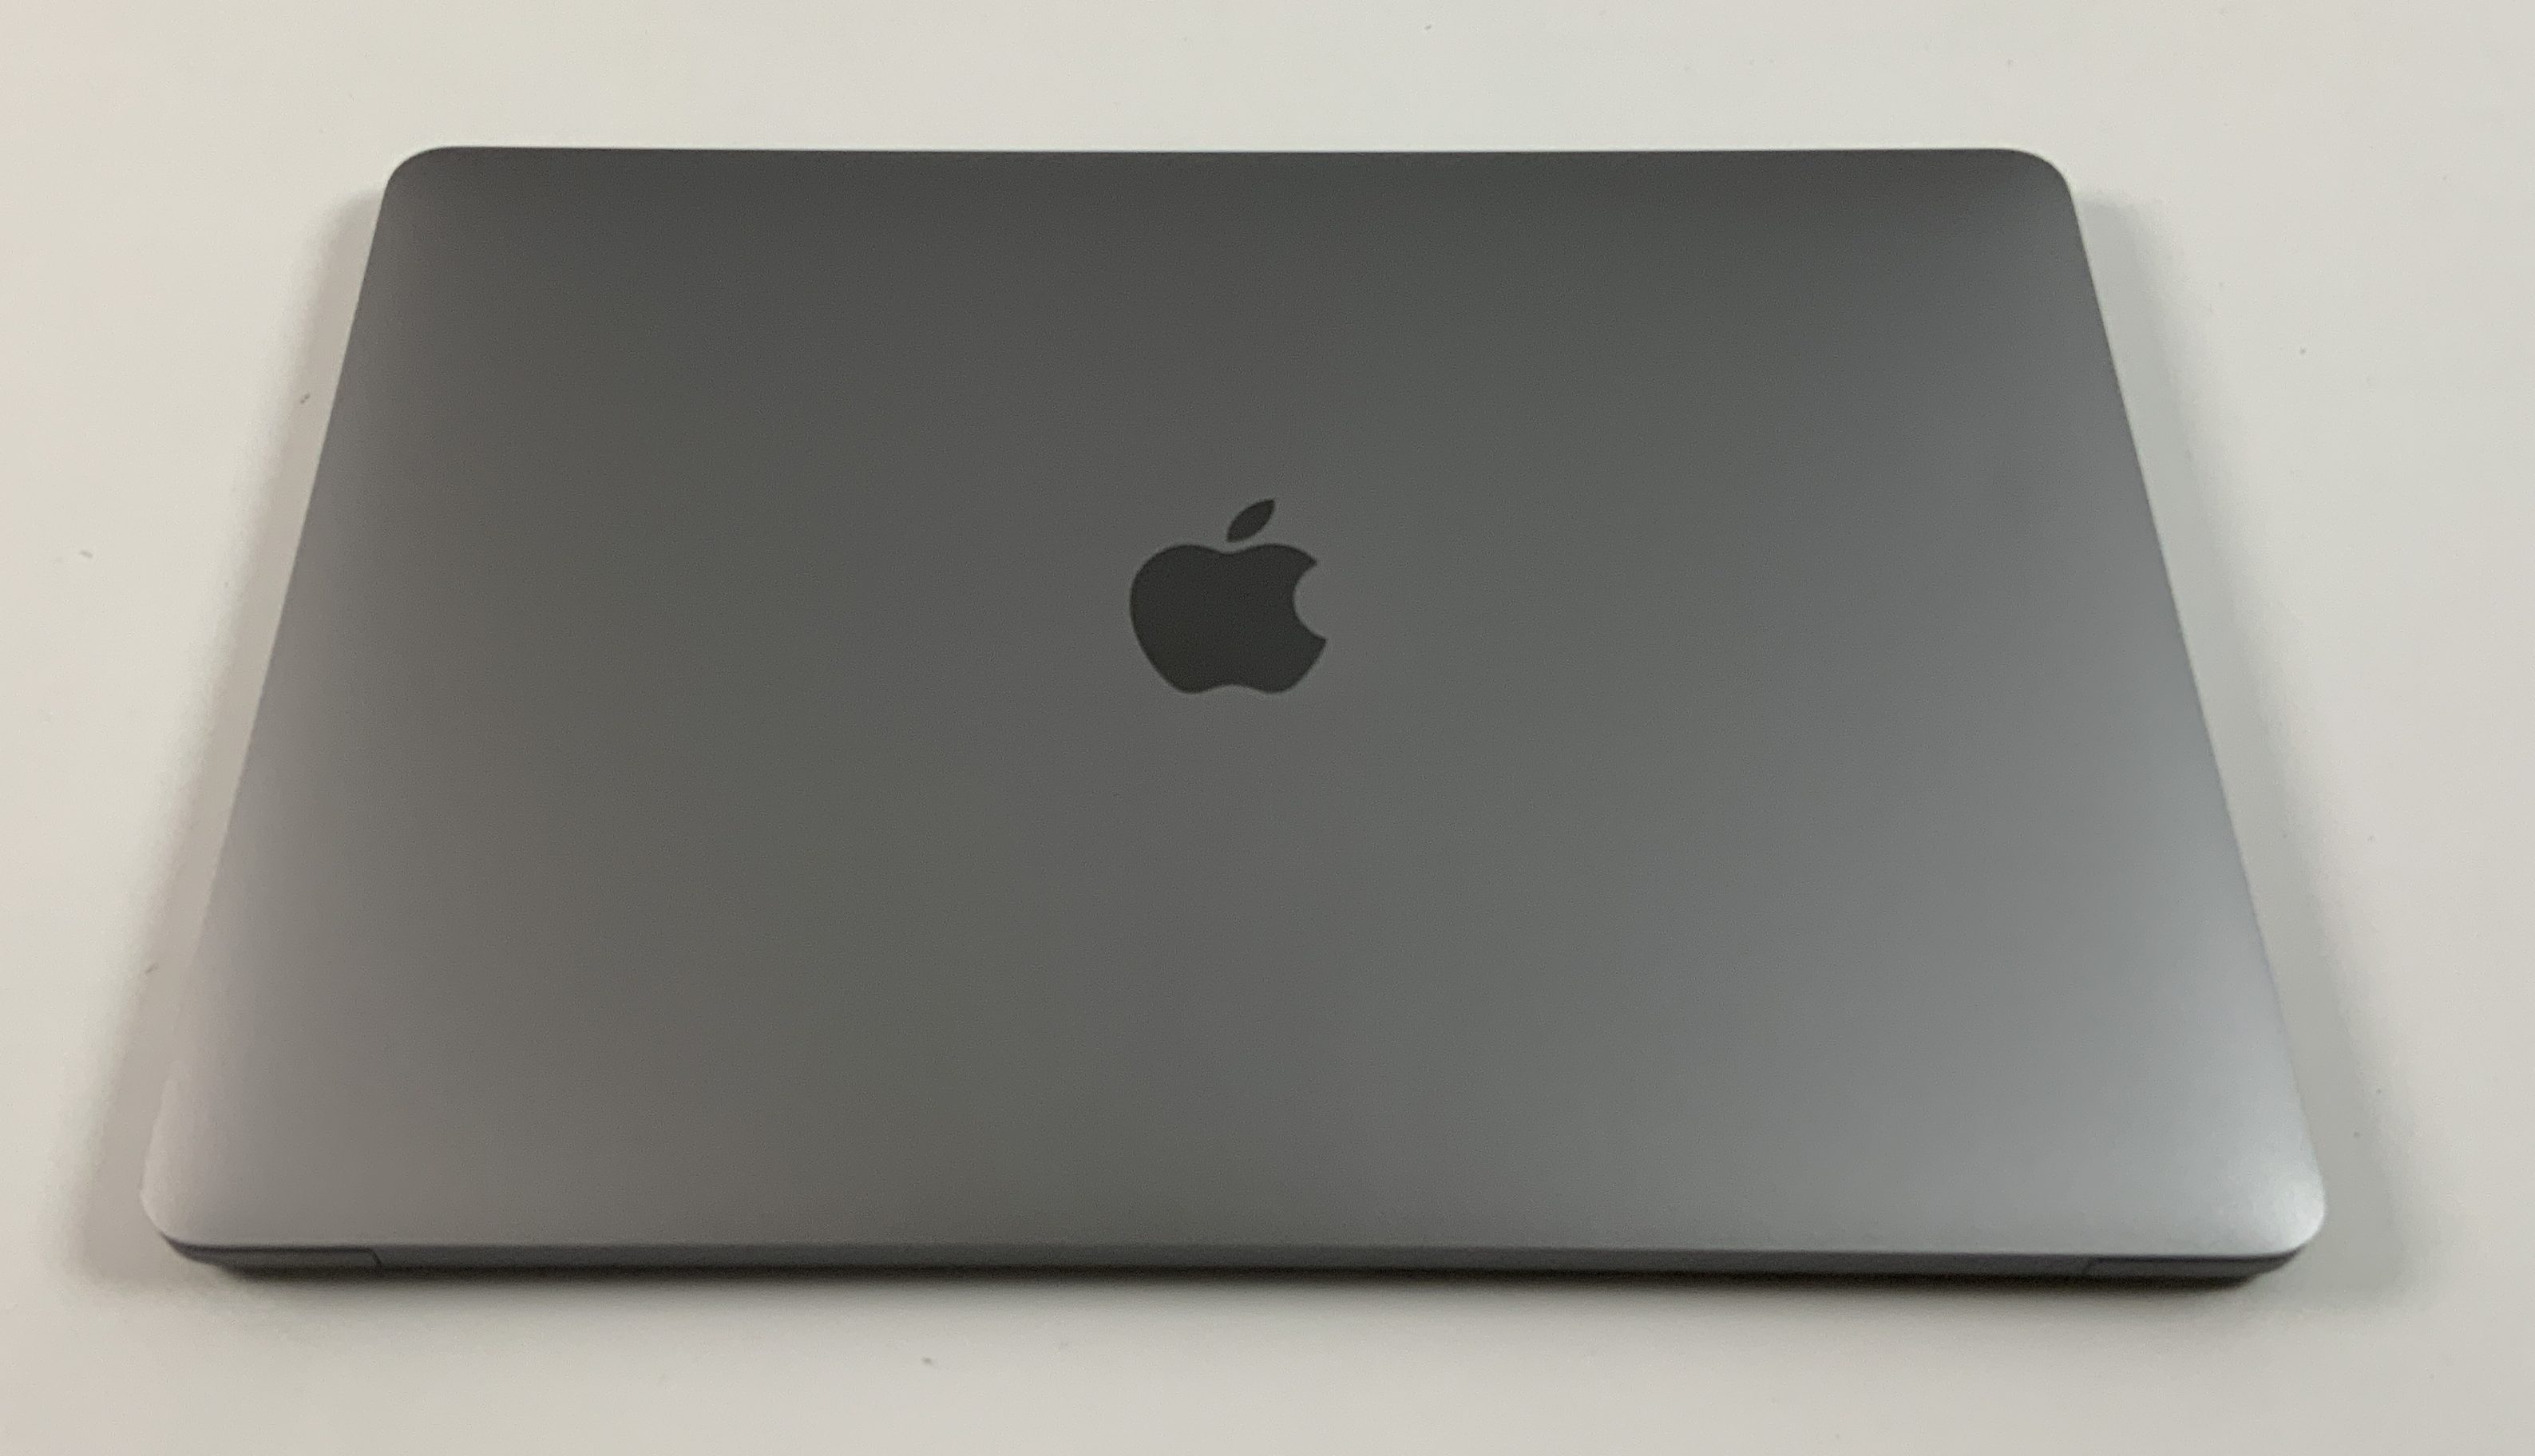 MacBook Pro 13" 4TBT Mid 2019 (Intel Quad-Core i5 2.4 GHz 16 GB RAM 1 TB SSD), Space Gray, Intel Quad-Core i5 2.4 GHz, 16 GB RAM, 1 TB SSD, bild 2